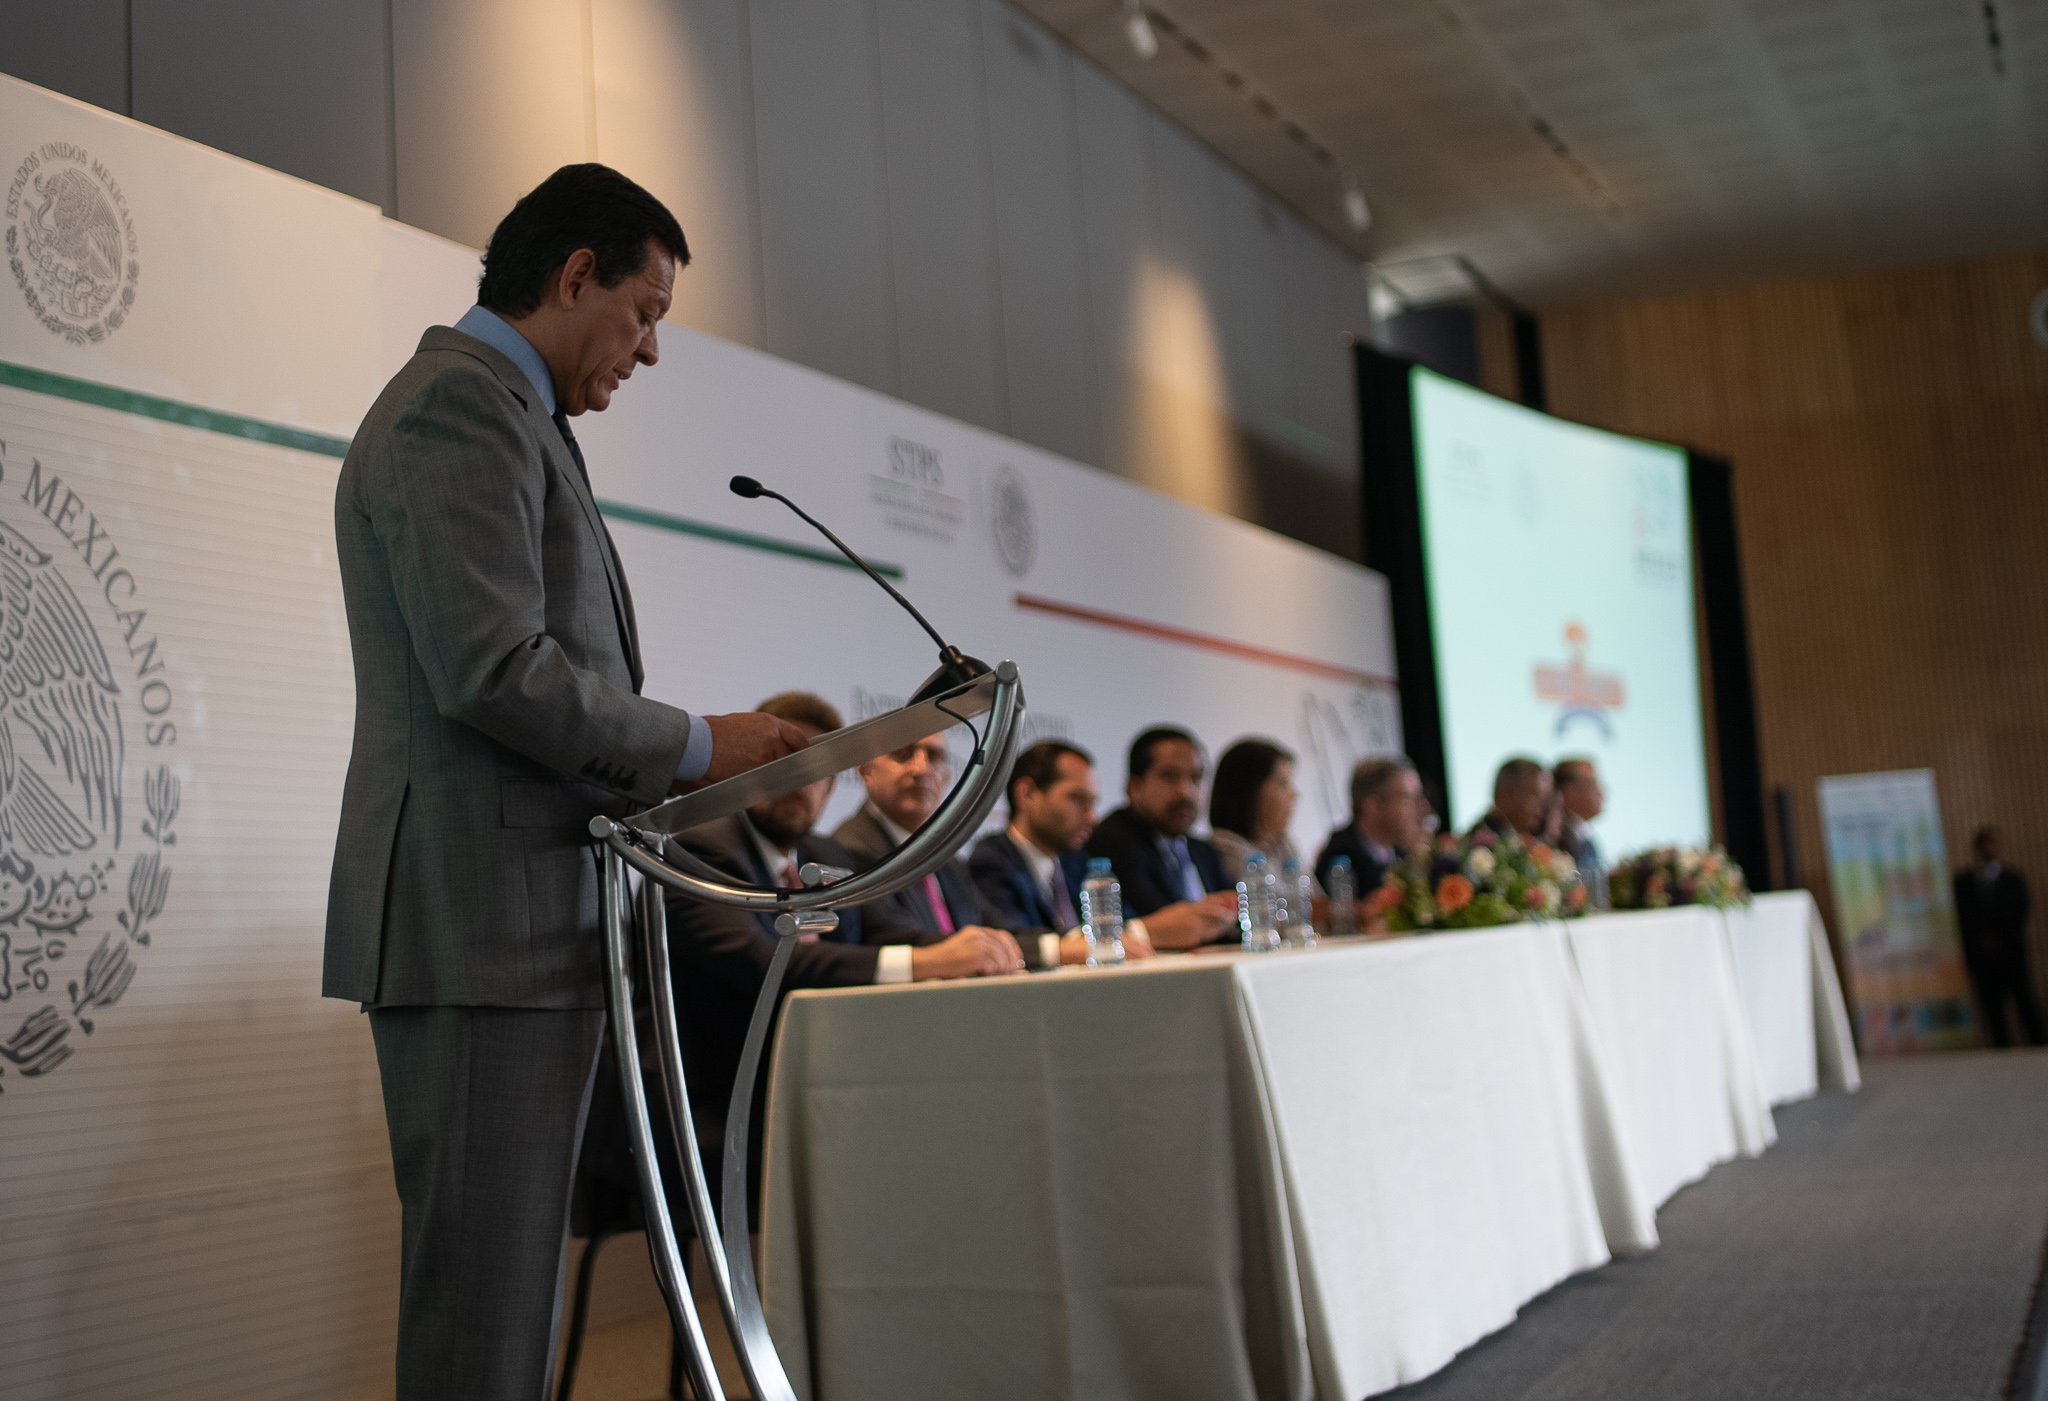 Foto panorámica del podium del evento donde se hizo entrega del Distintivo México sin Trabajo Infantil.